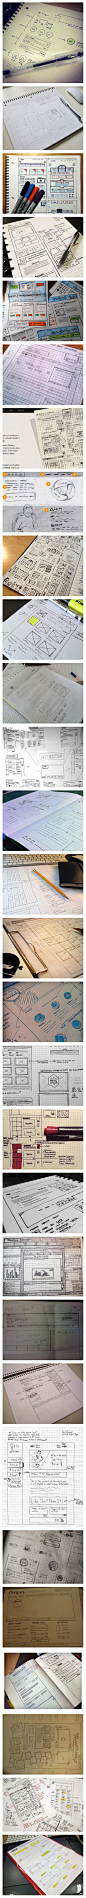 【30张设计师的手绘网页草图（原型图/框架图）】今天发现在 designbeep 上整理了一些设计师画的一些草图，也可以称作”原型图”，大家可以看看国外的设计师们是怎样画的，或者参考他们用什么笔和本本→http://t.cn/8kkgx4O